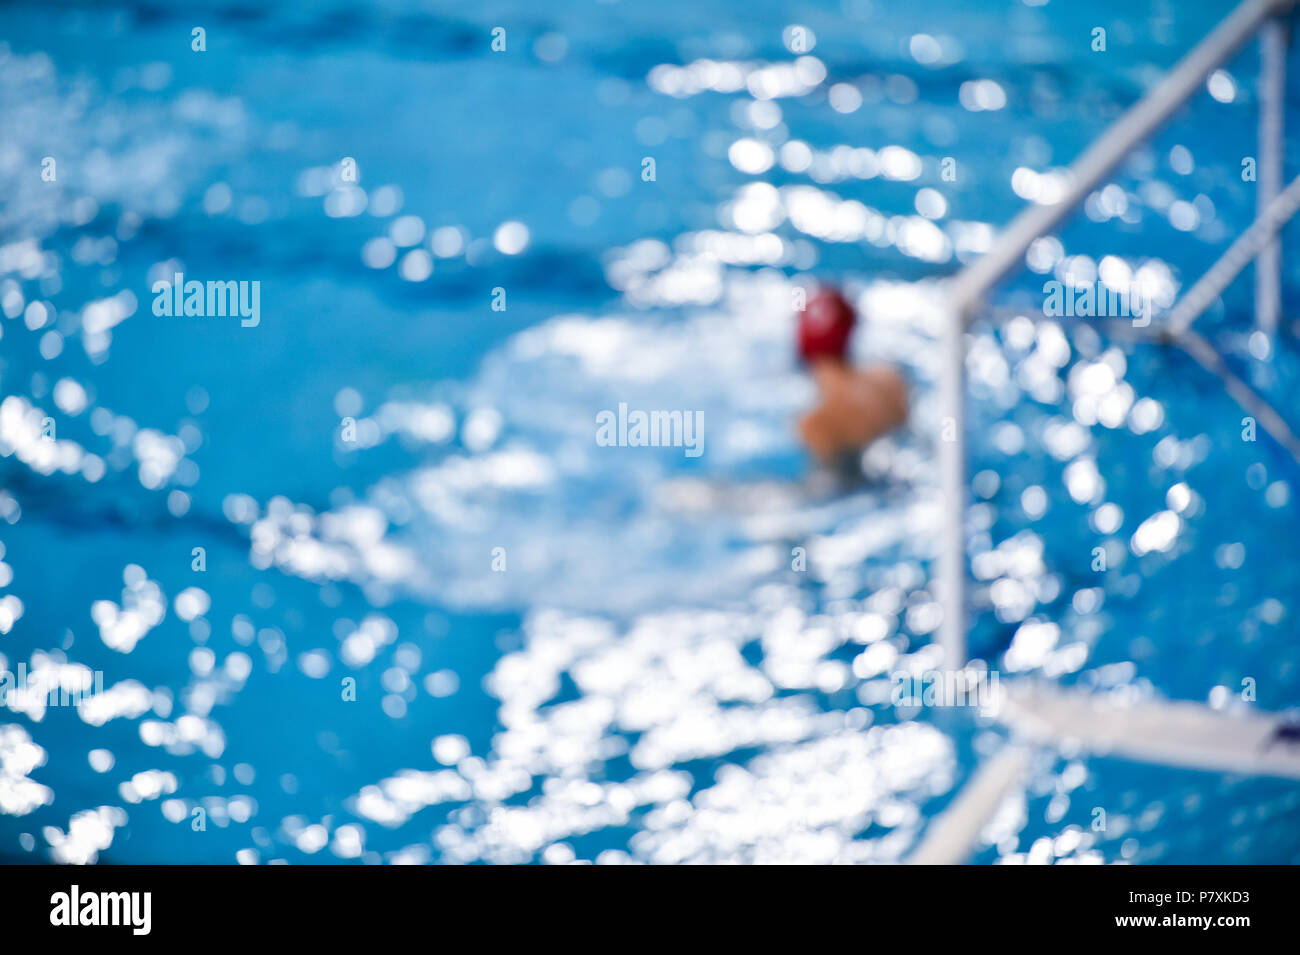 Une image d'un match de water-polo Banque D'Images